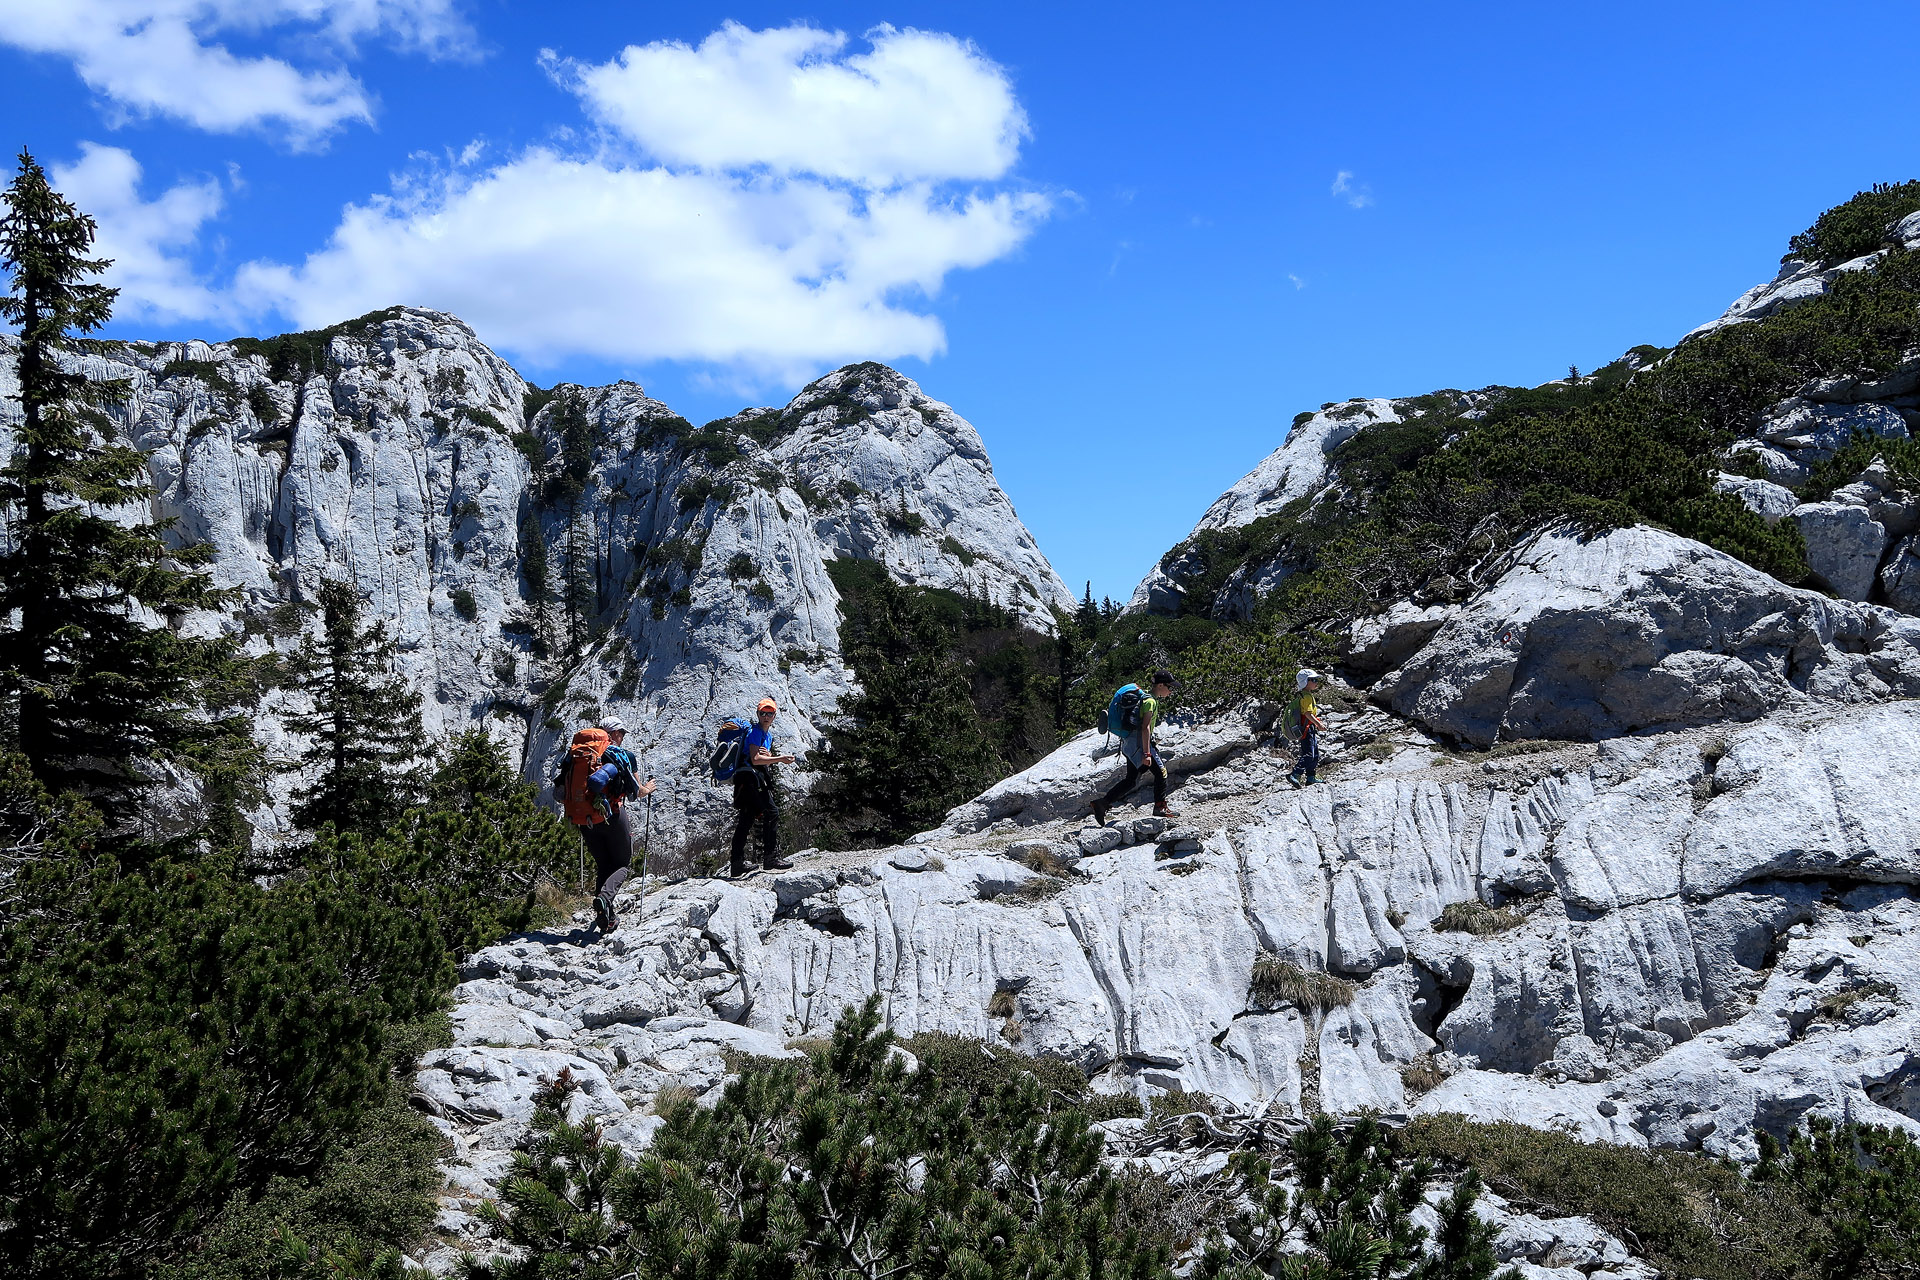  Trekking across wild Velebit - Premužičeva staza